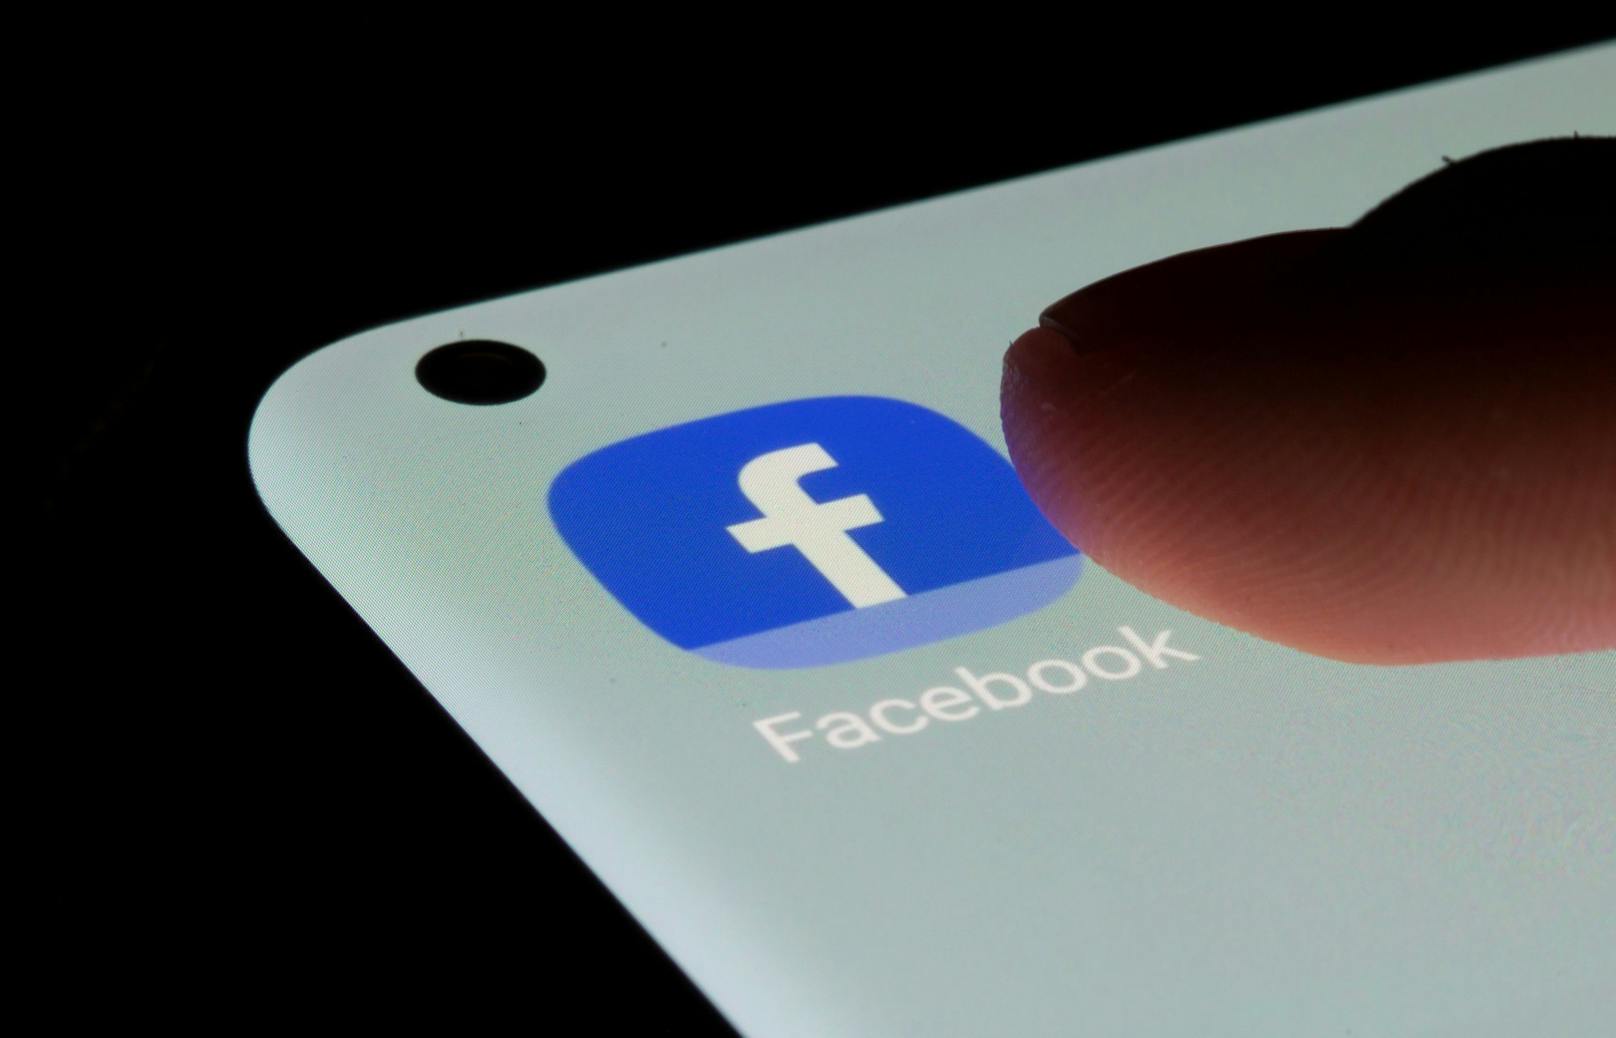 Einige der betroffenen Facebook-Nutzerinnen und -Nutzer würden dem Handel mit ihren Daten sogar zustimmen, wenn der Preis dafür stimmt.